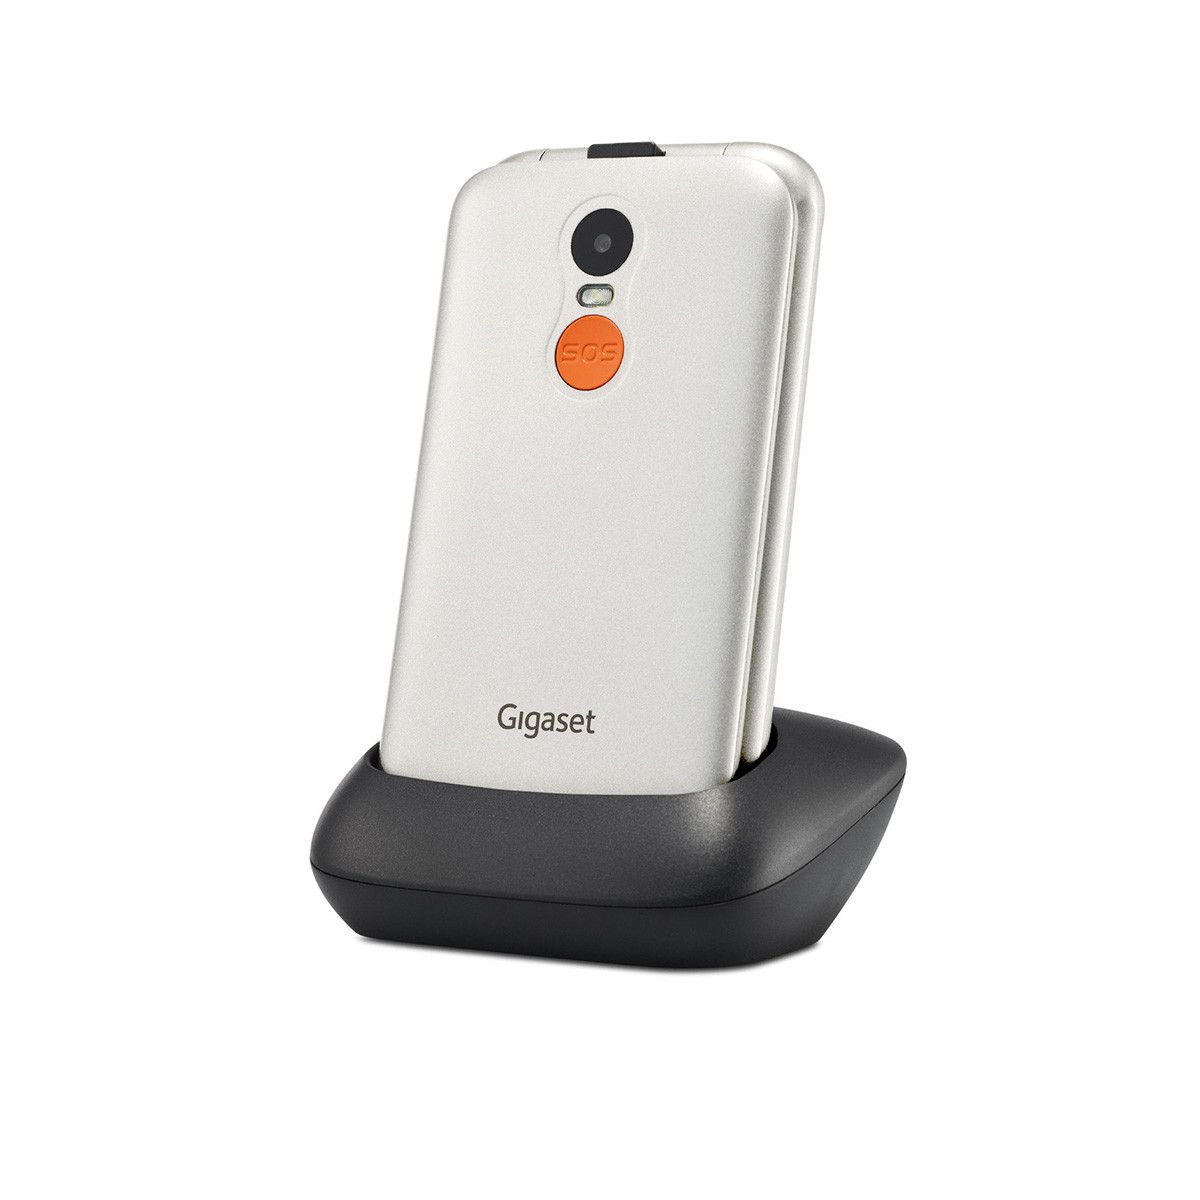 Gigaset GL590 2G Smartphone Dual von expert Zoll) (Weiß) MP cm 7,11 Sim Technomarkt (2.8 0,3